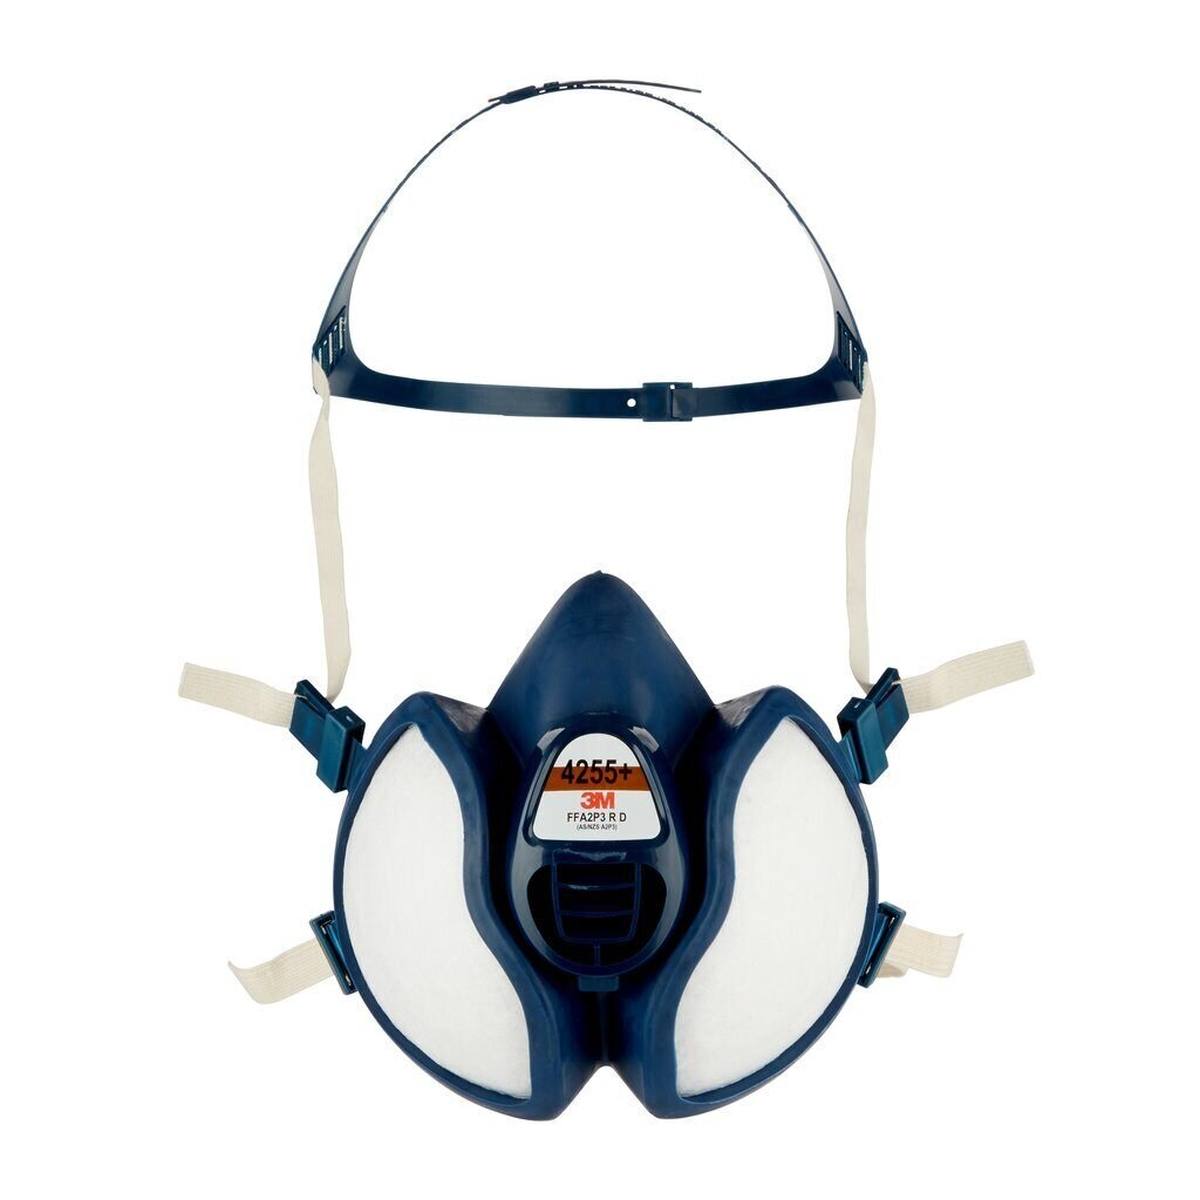 Masque de protection respiratoire 3M 4255+ FFA2P3RD contre les gaz et les vapeurs organiques ainsi que les particules jusqu'à 30 fois la limite autorisée